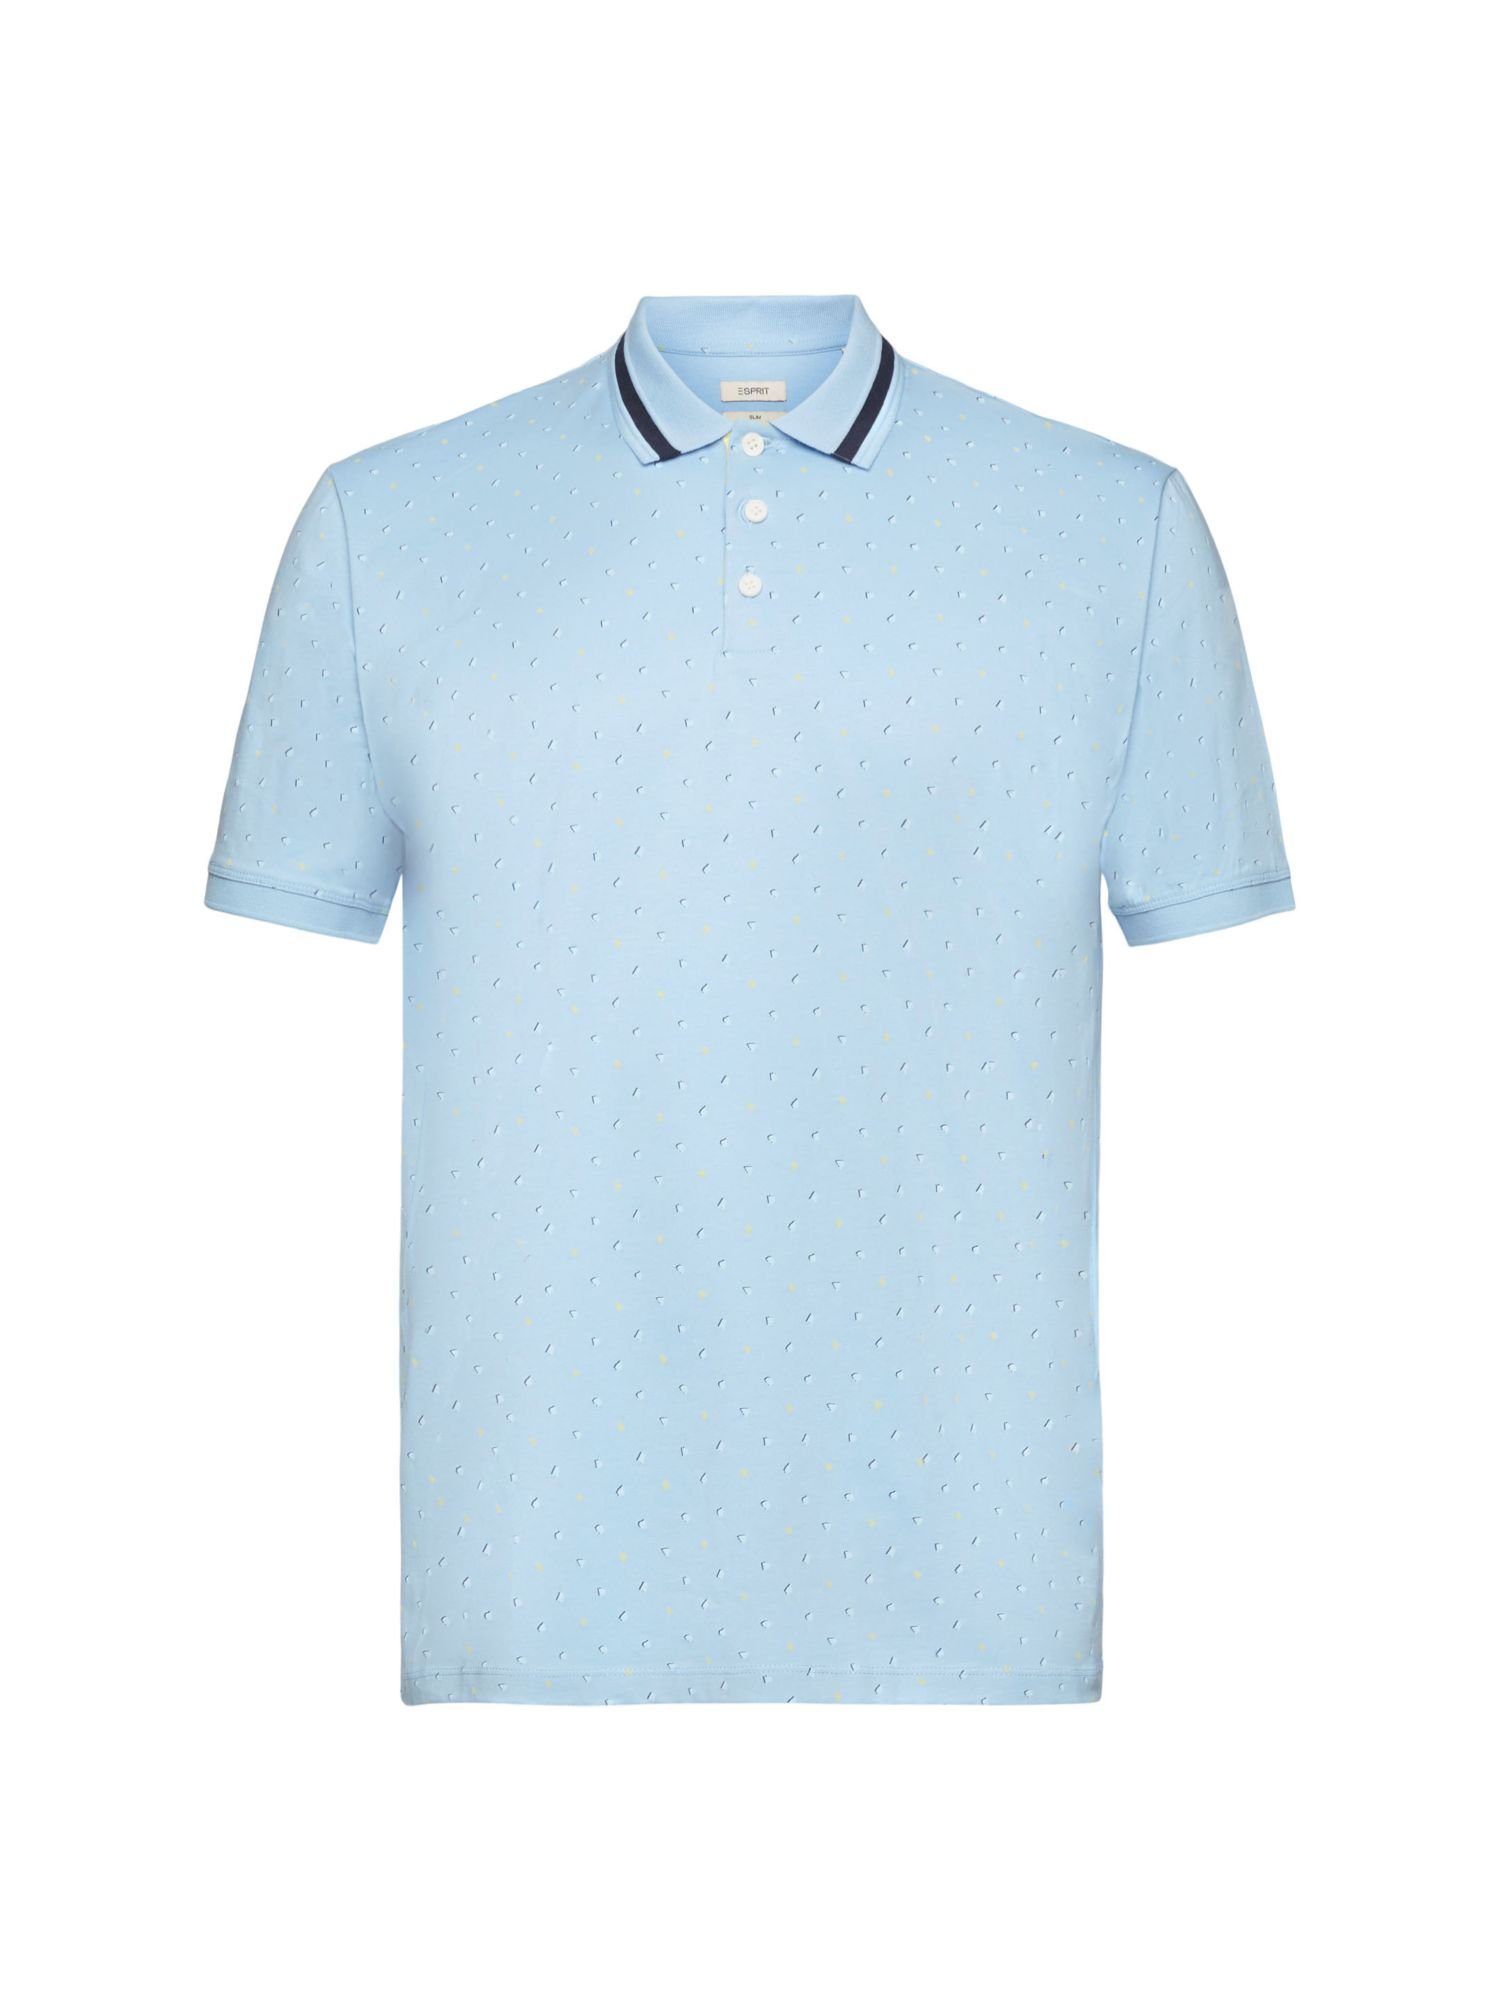 Esprit Poloshirt Poloshirt mit Allover-Muster LIGHT AQUA BLUE